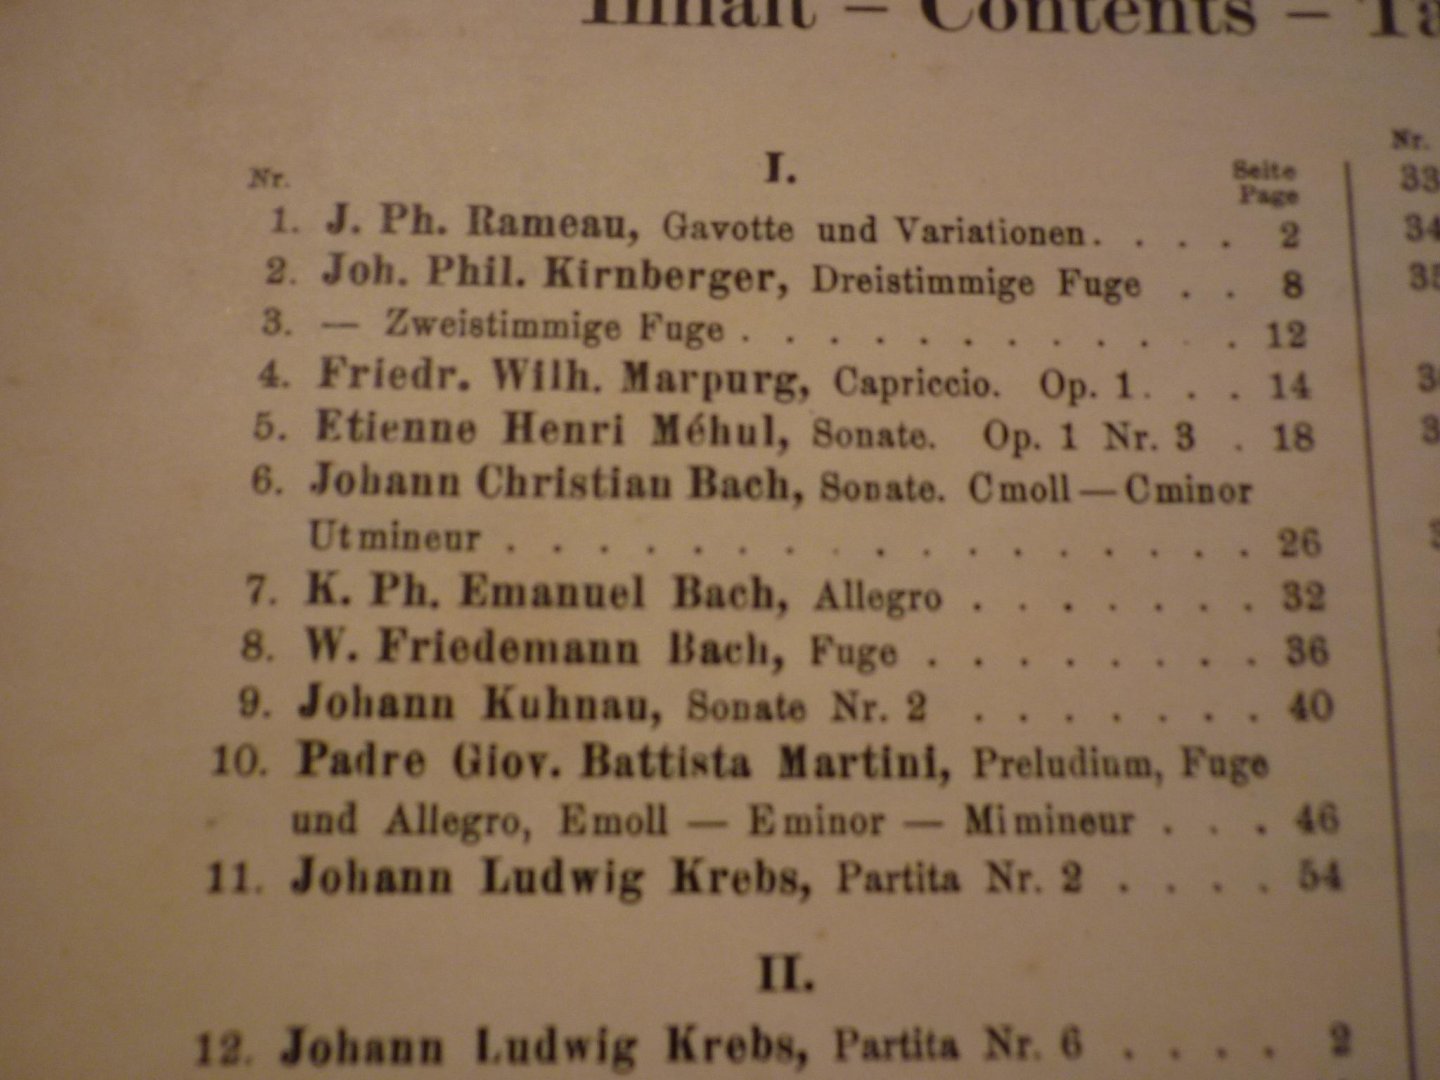 Div. Componisten - Alte meister; Band I en Band II; Sammlung wertvoller Klavierstucke des 17. und 18. Jahrhunderts (herausgegeben von E. Pauer)